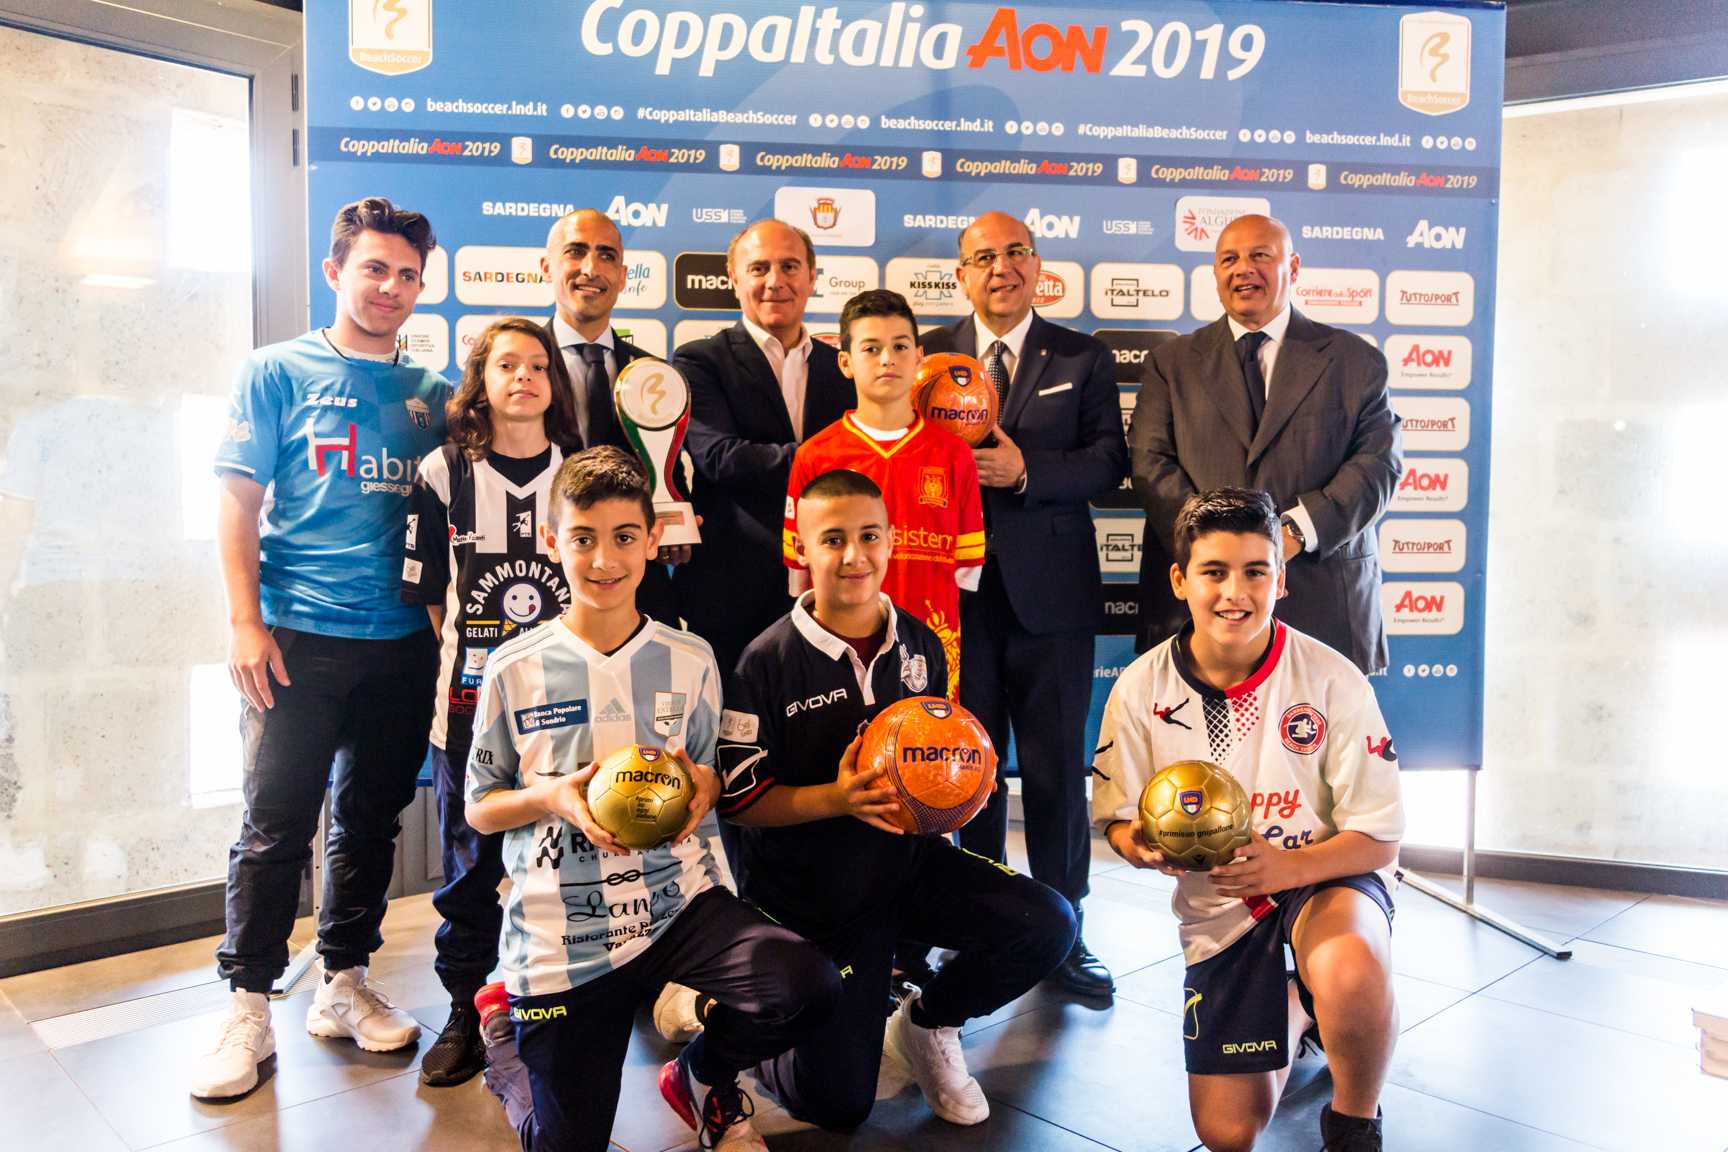 Beach soccer: Coppa Italia Aon 2019: inizia lo show!